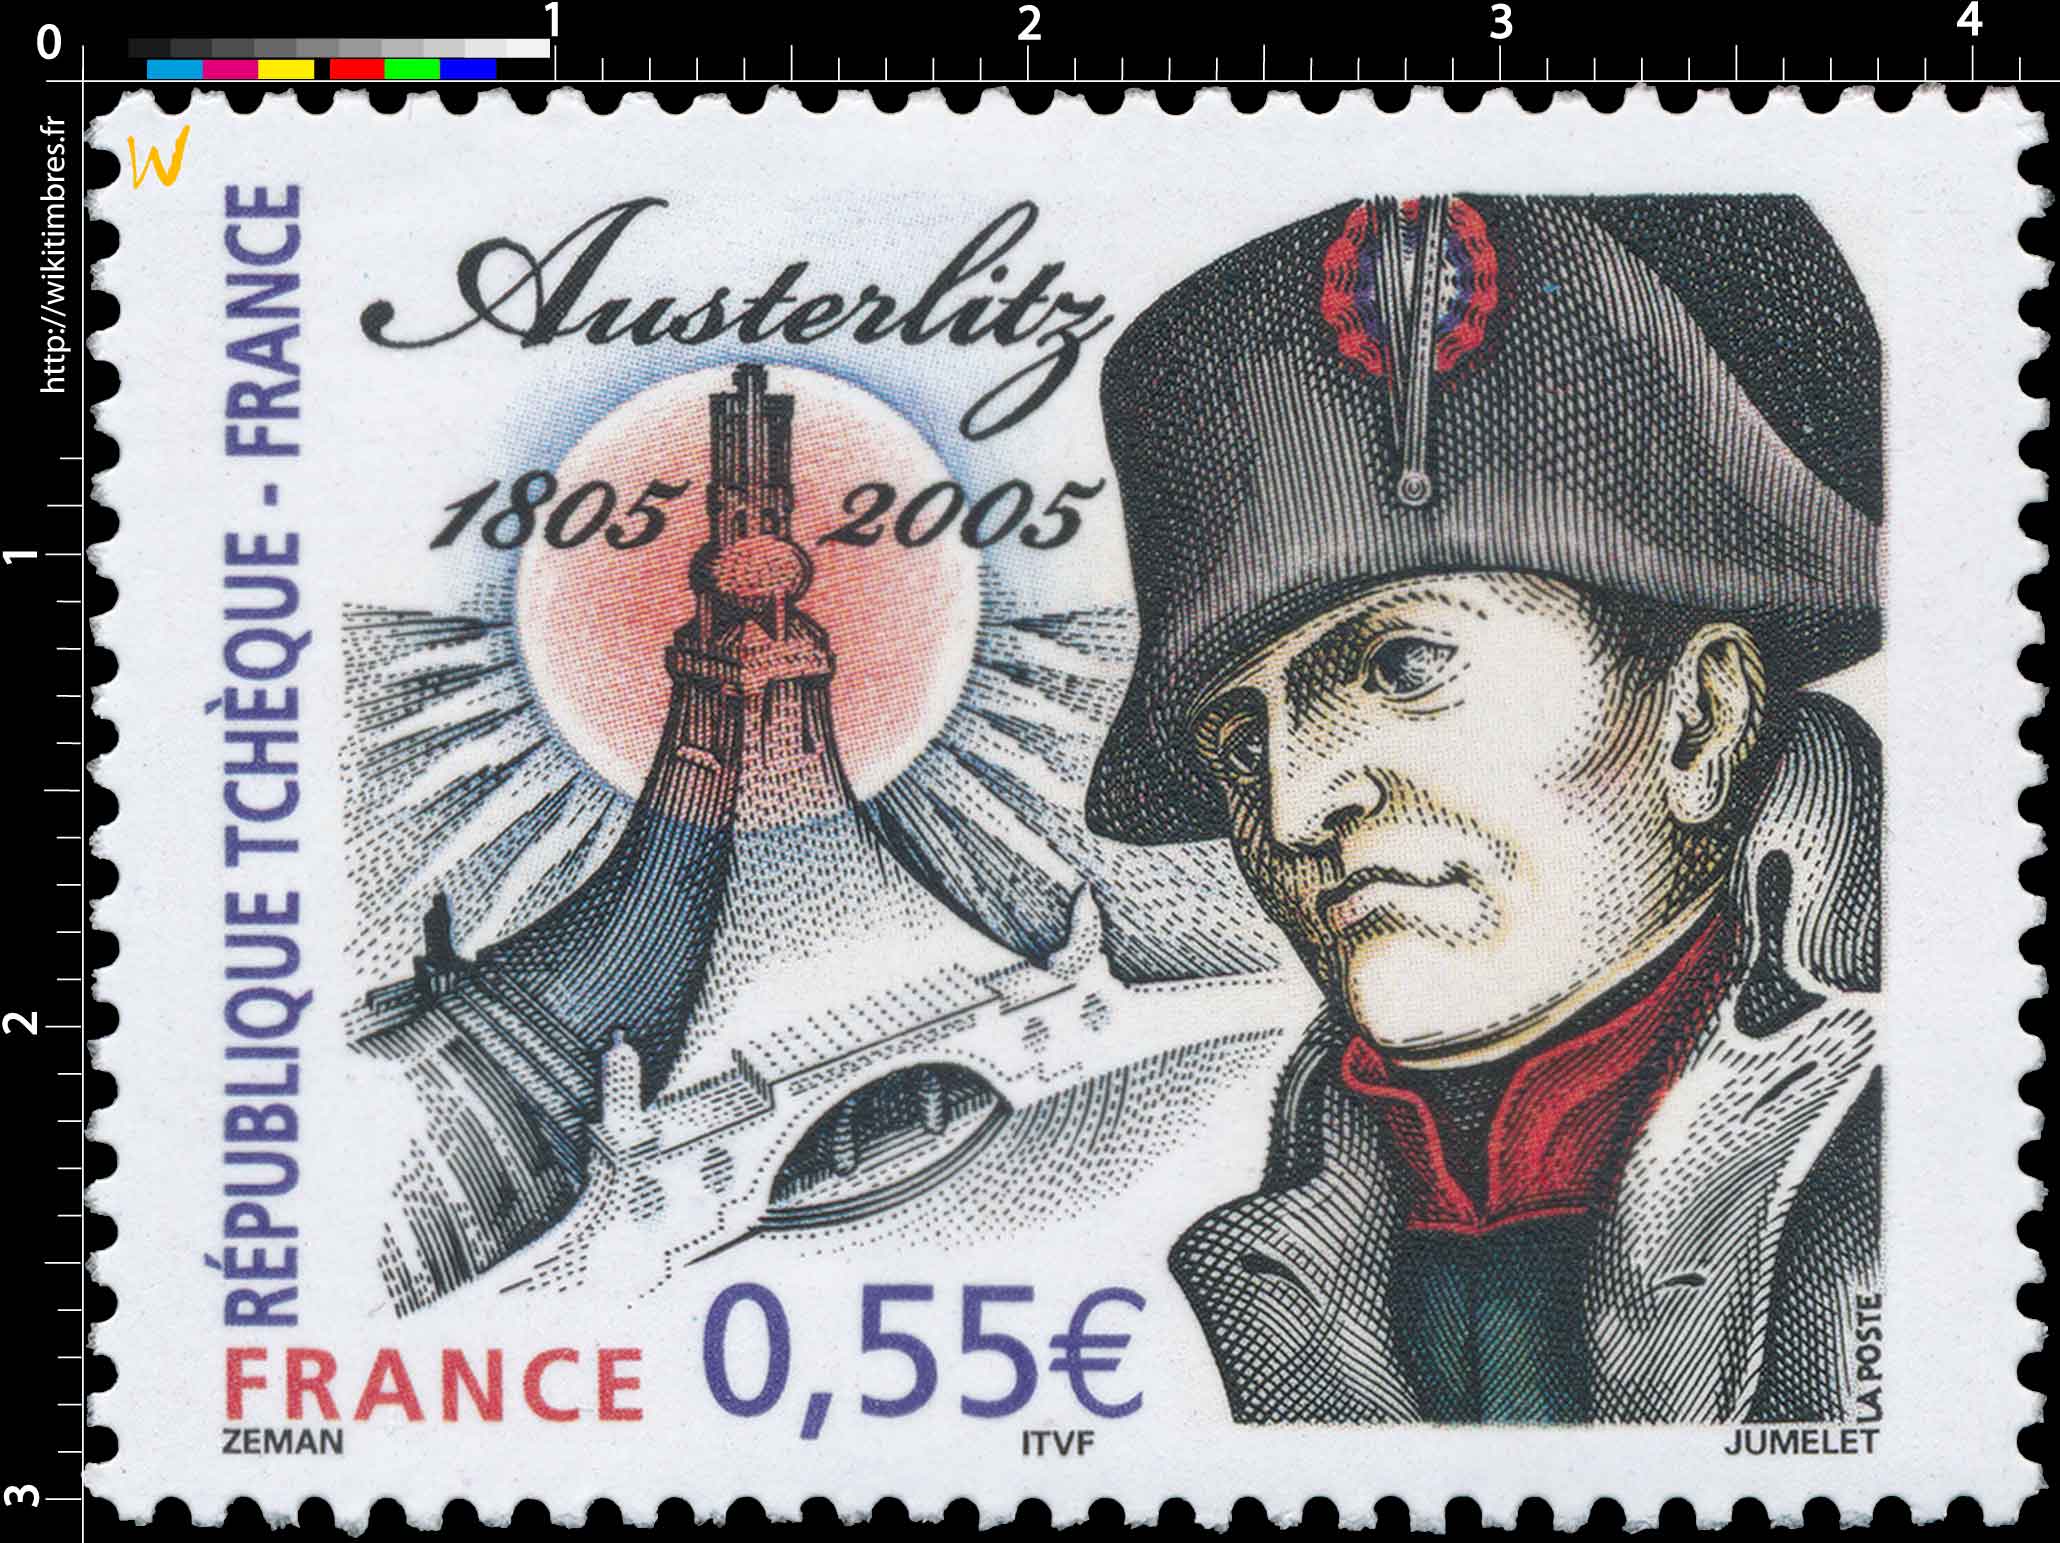 RÉPUBLIQUE TCHÈQUE – FRANCE Austerlitz 1805-2005